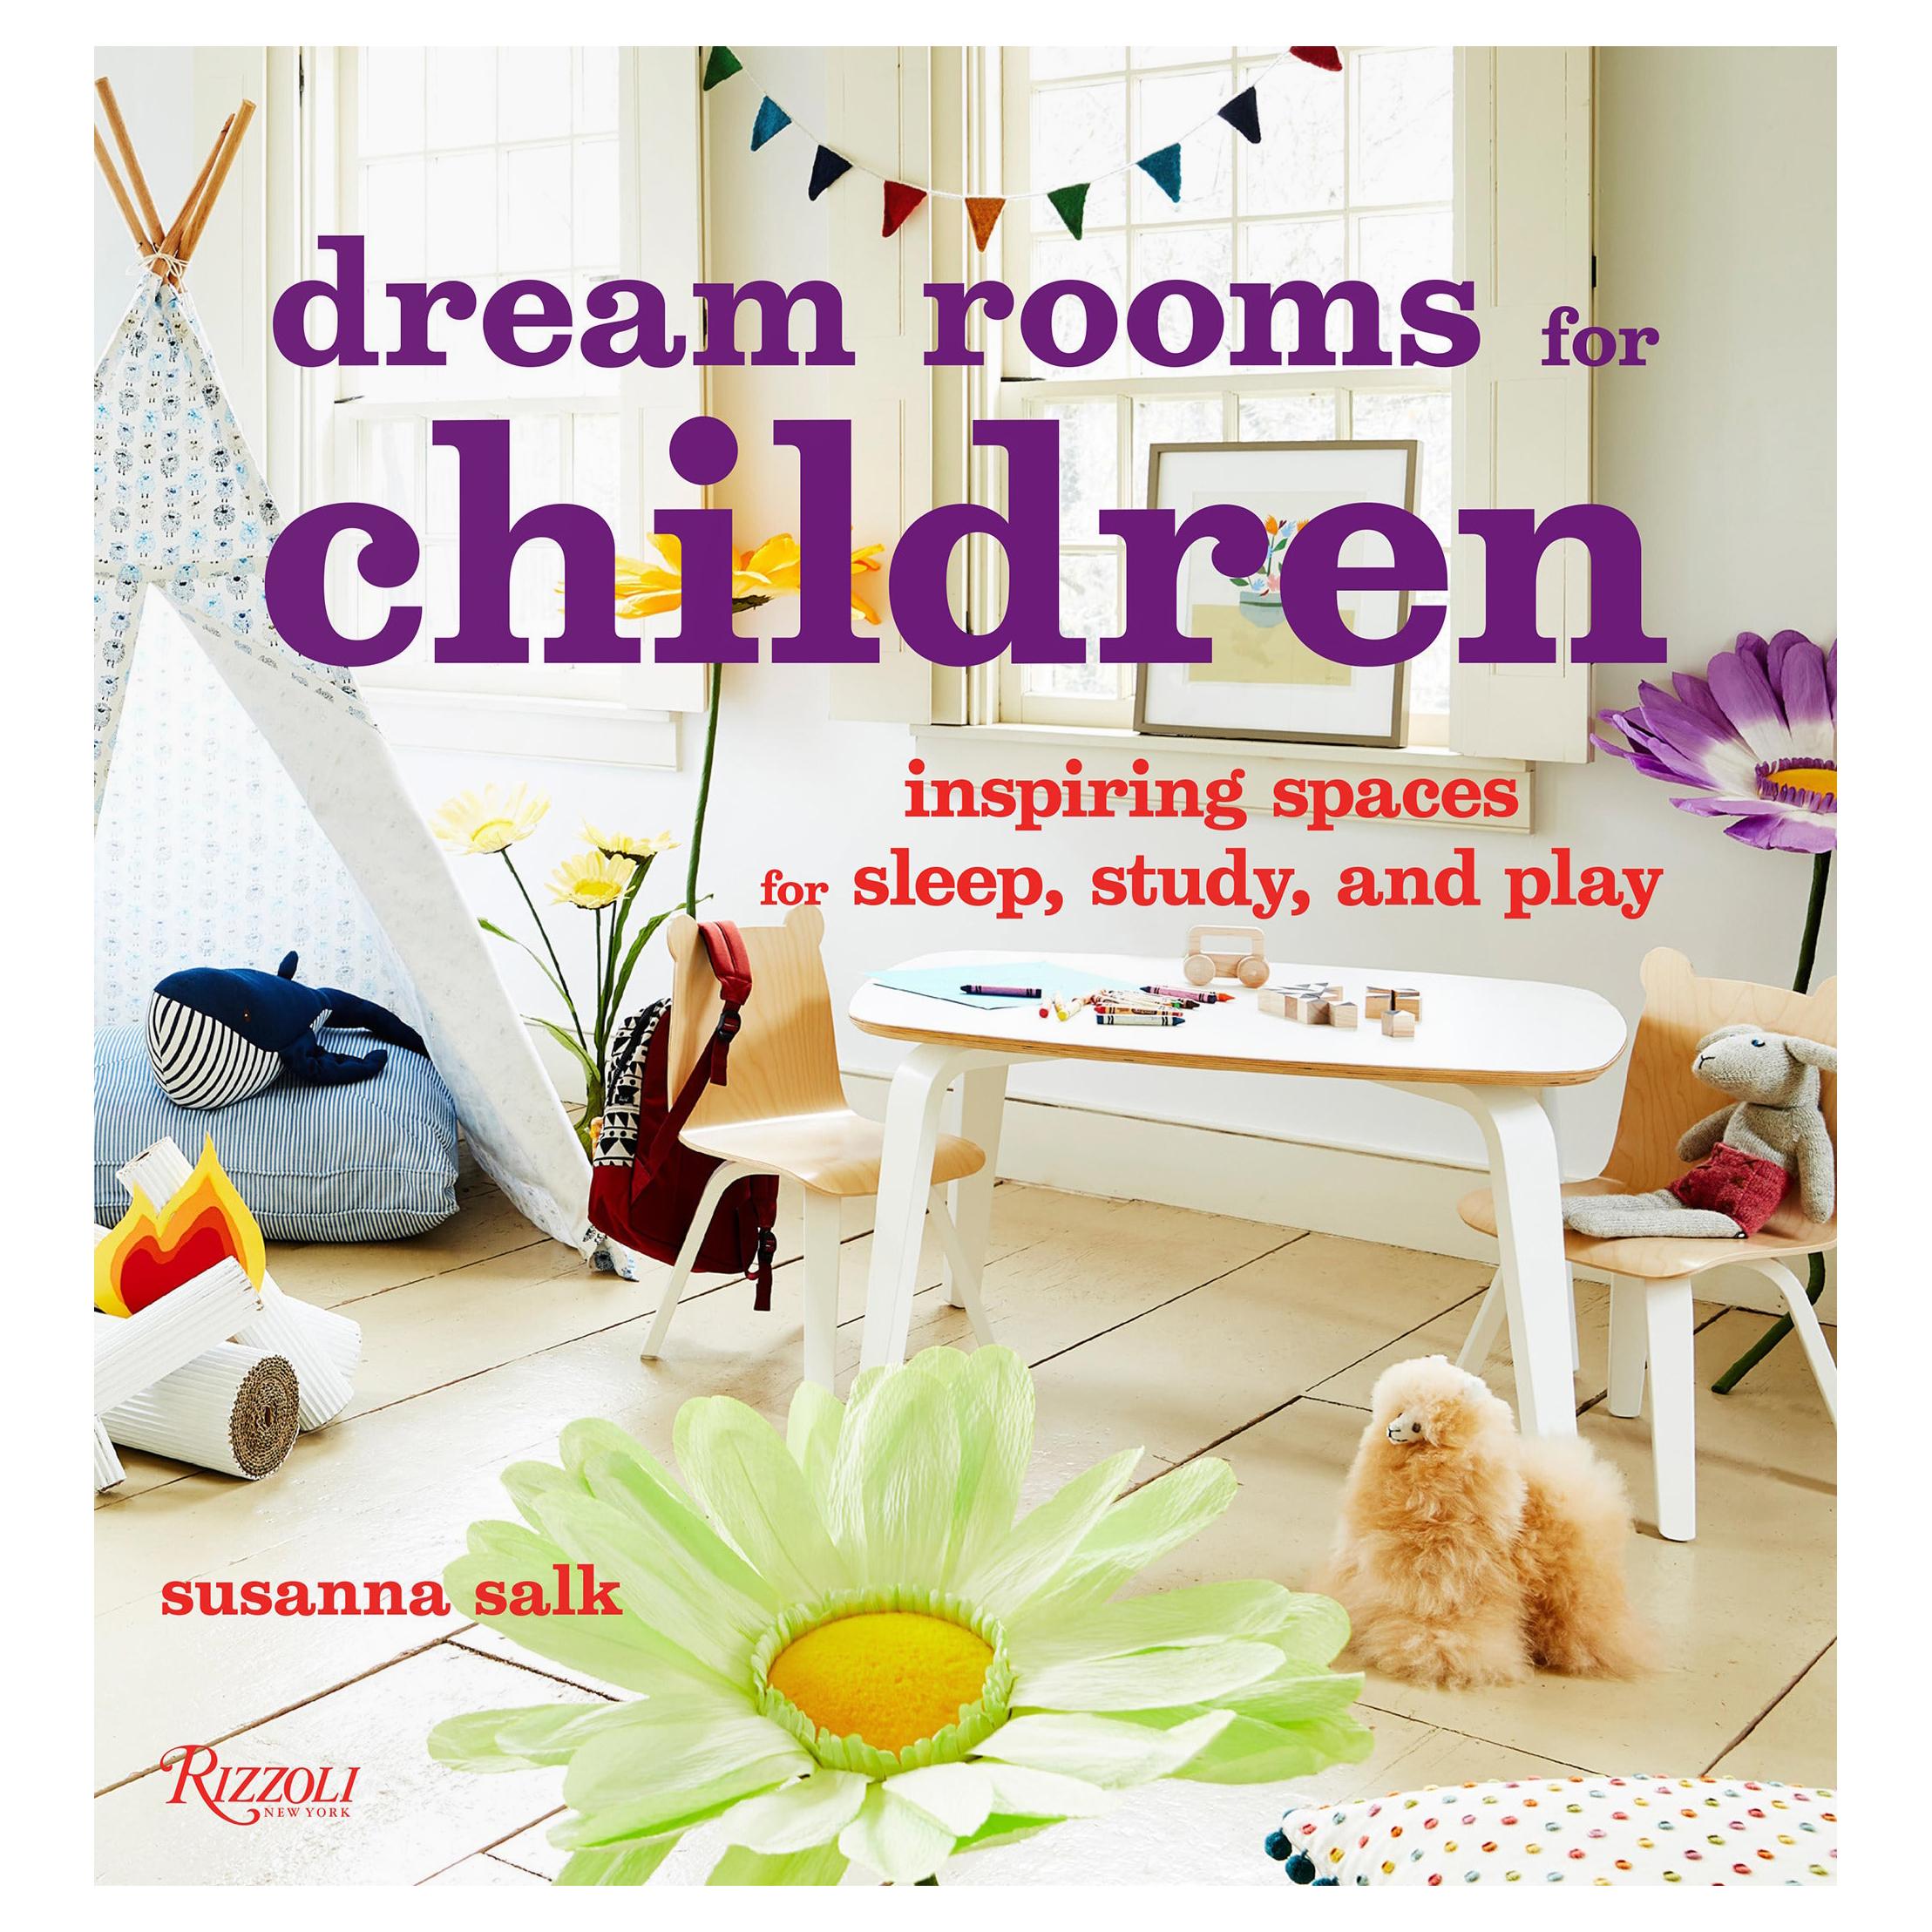 espaces de rêve pour enfants inspirants pour le coucher, l'étude et le jeu